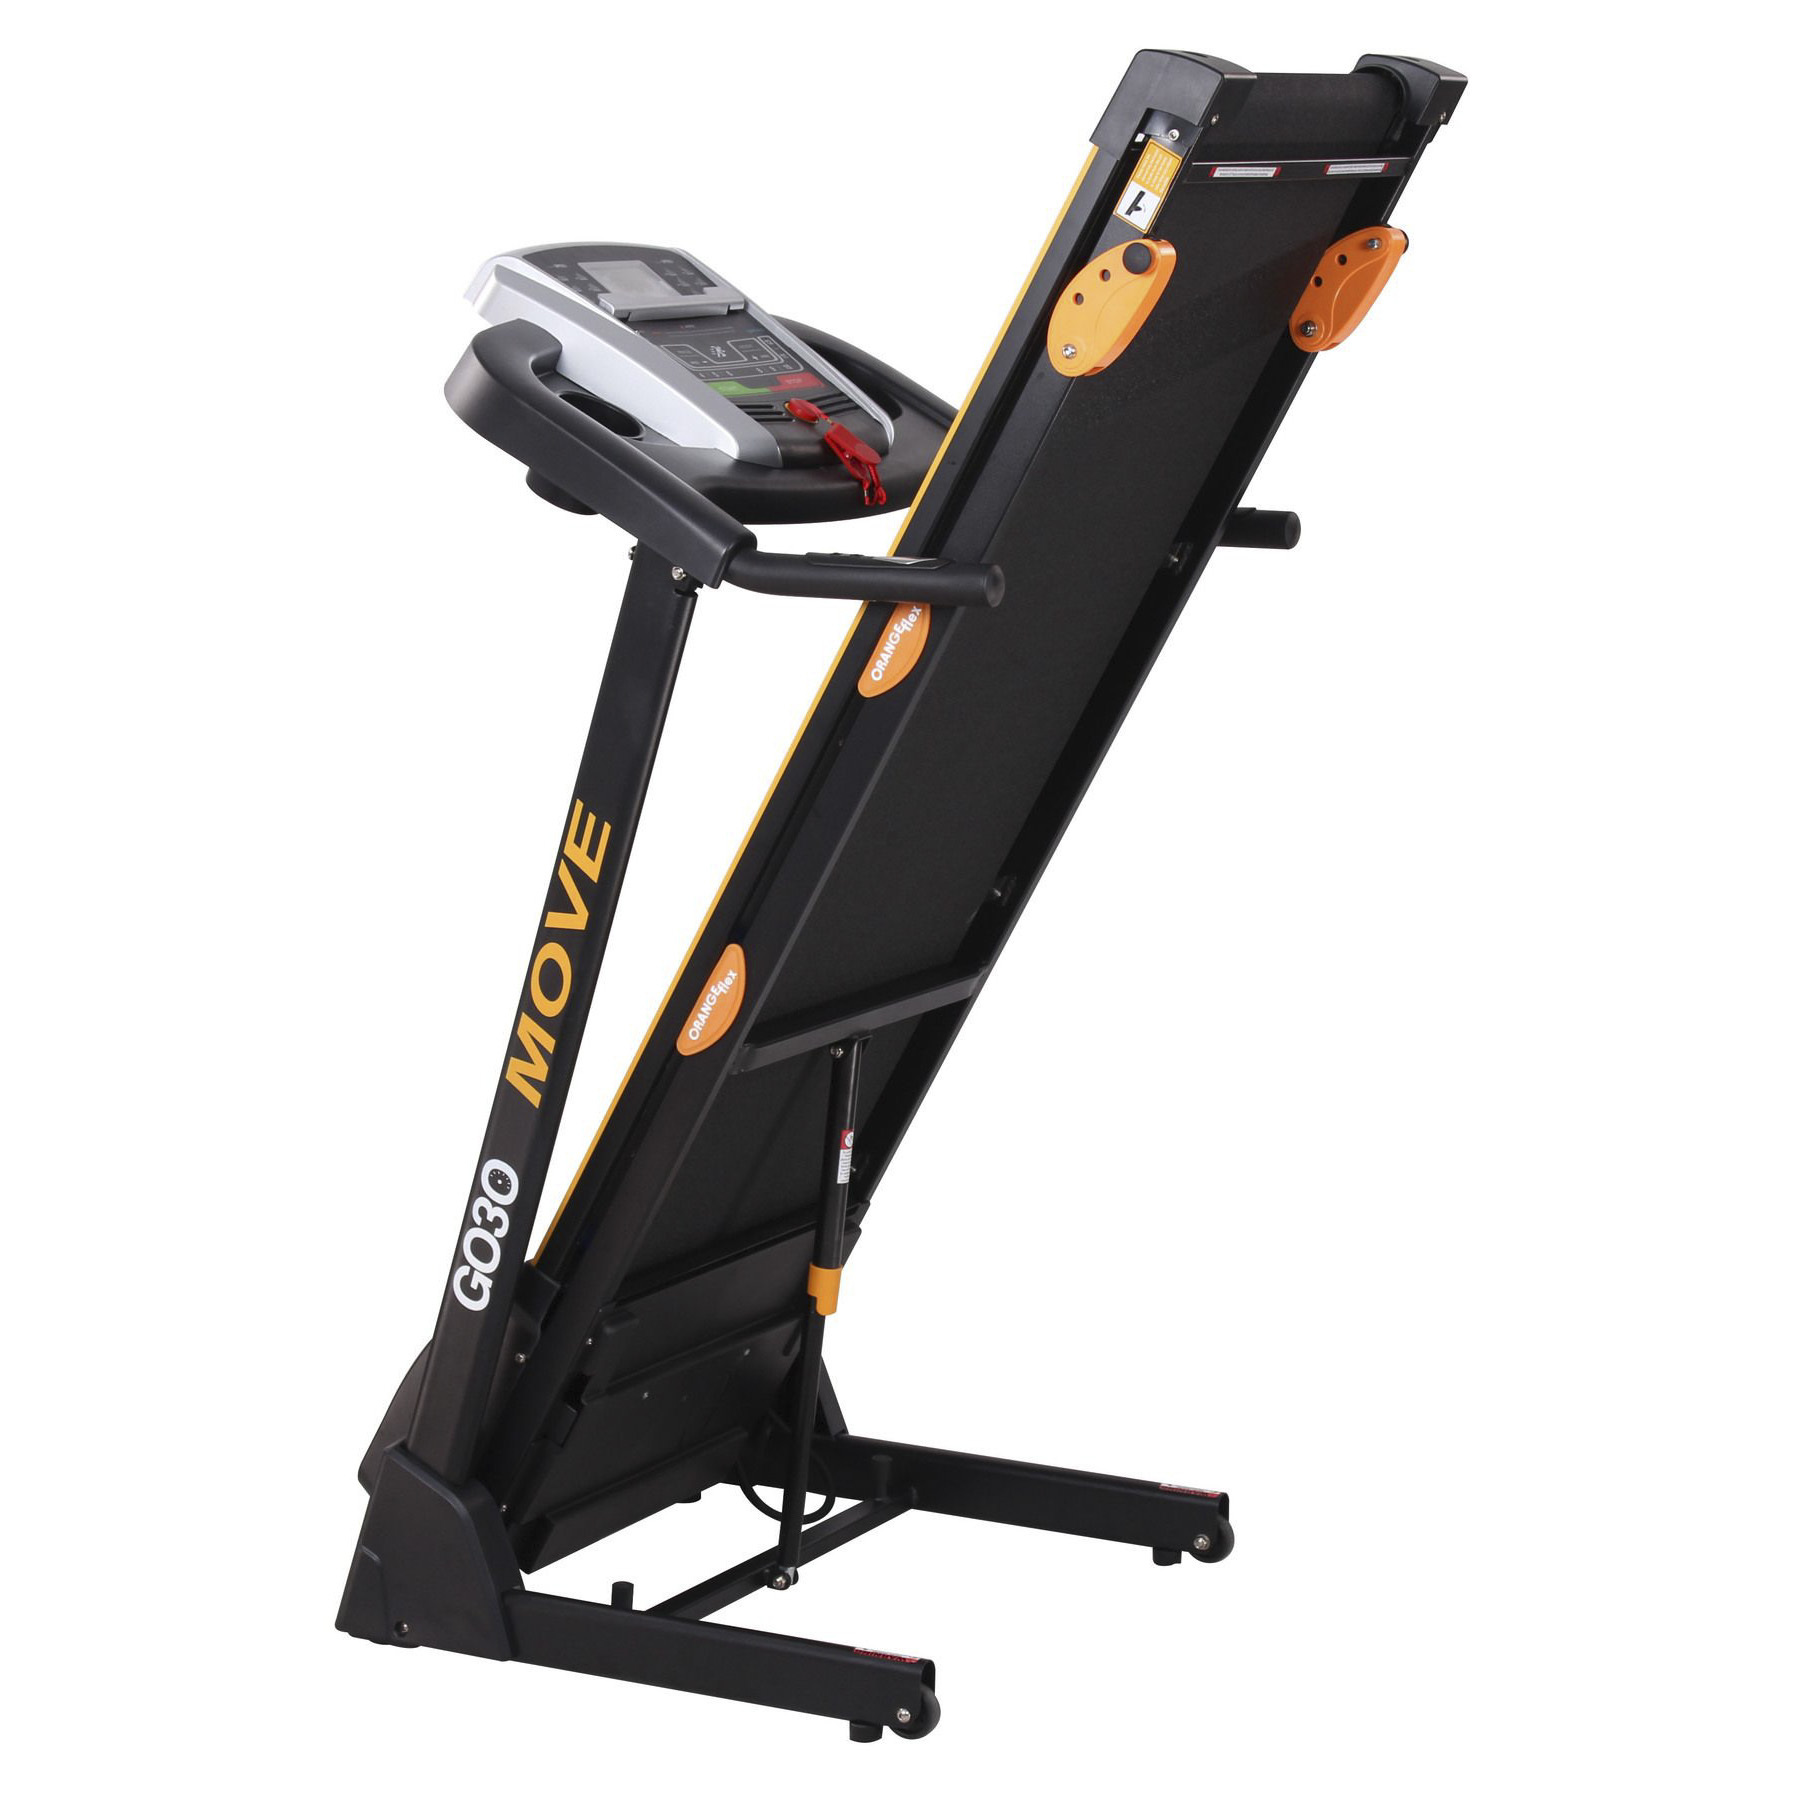 GO30 Compact Treadmill MOVE-100